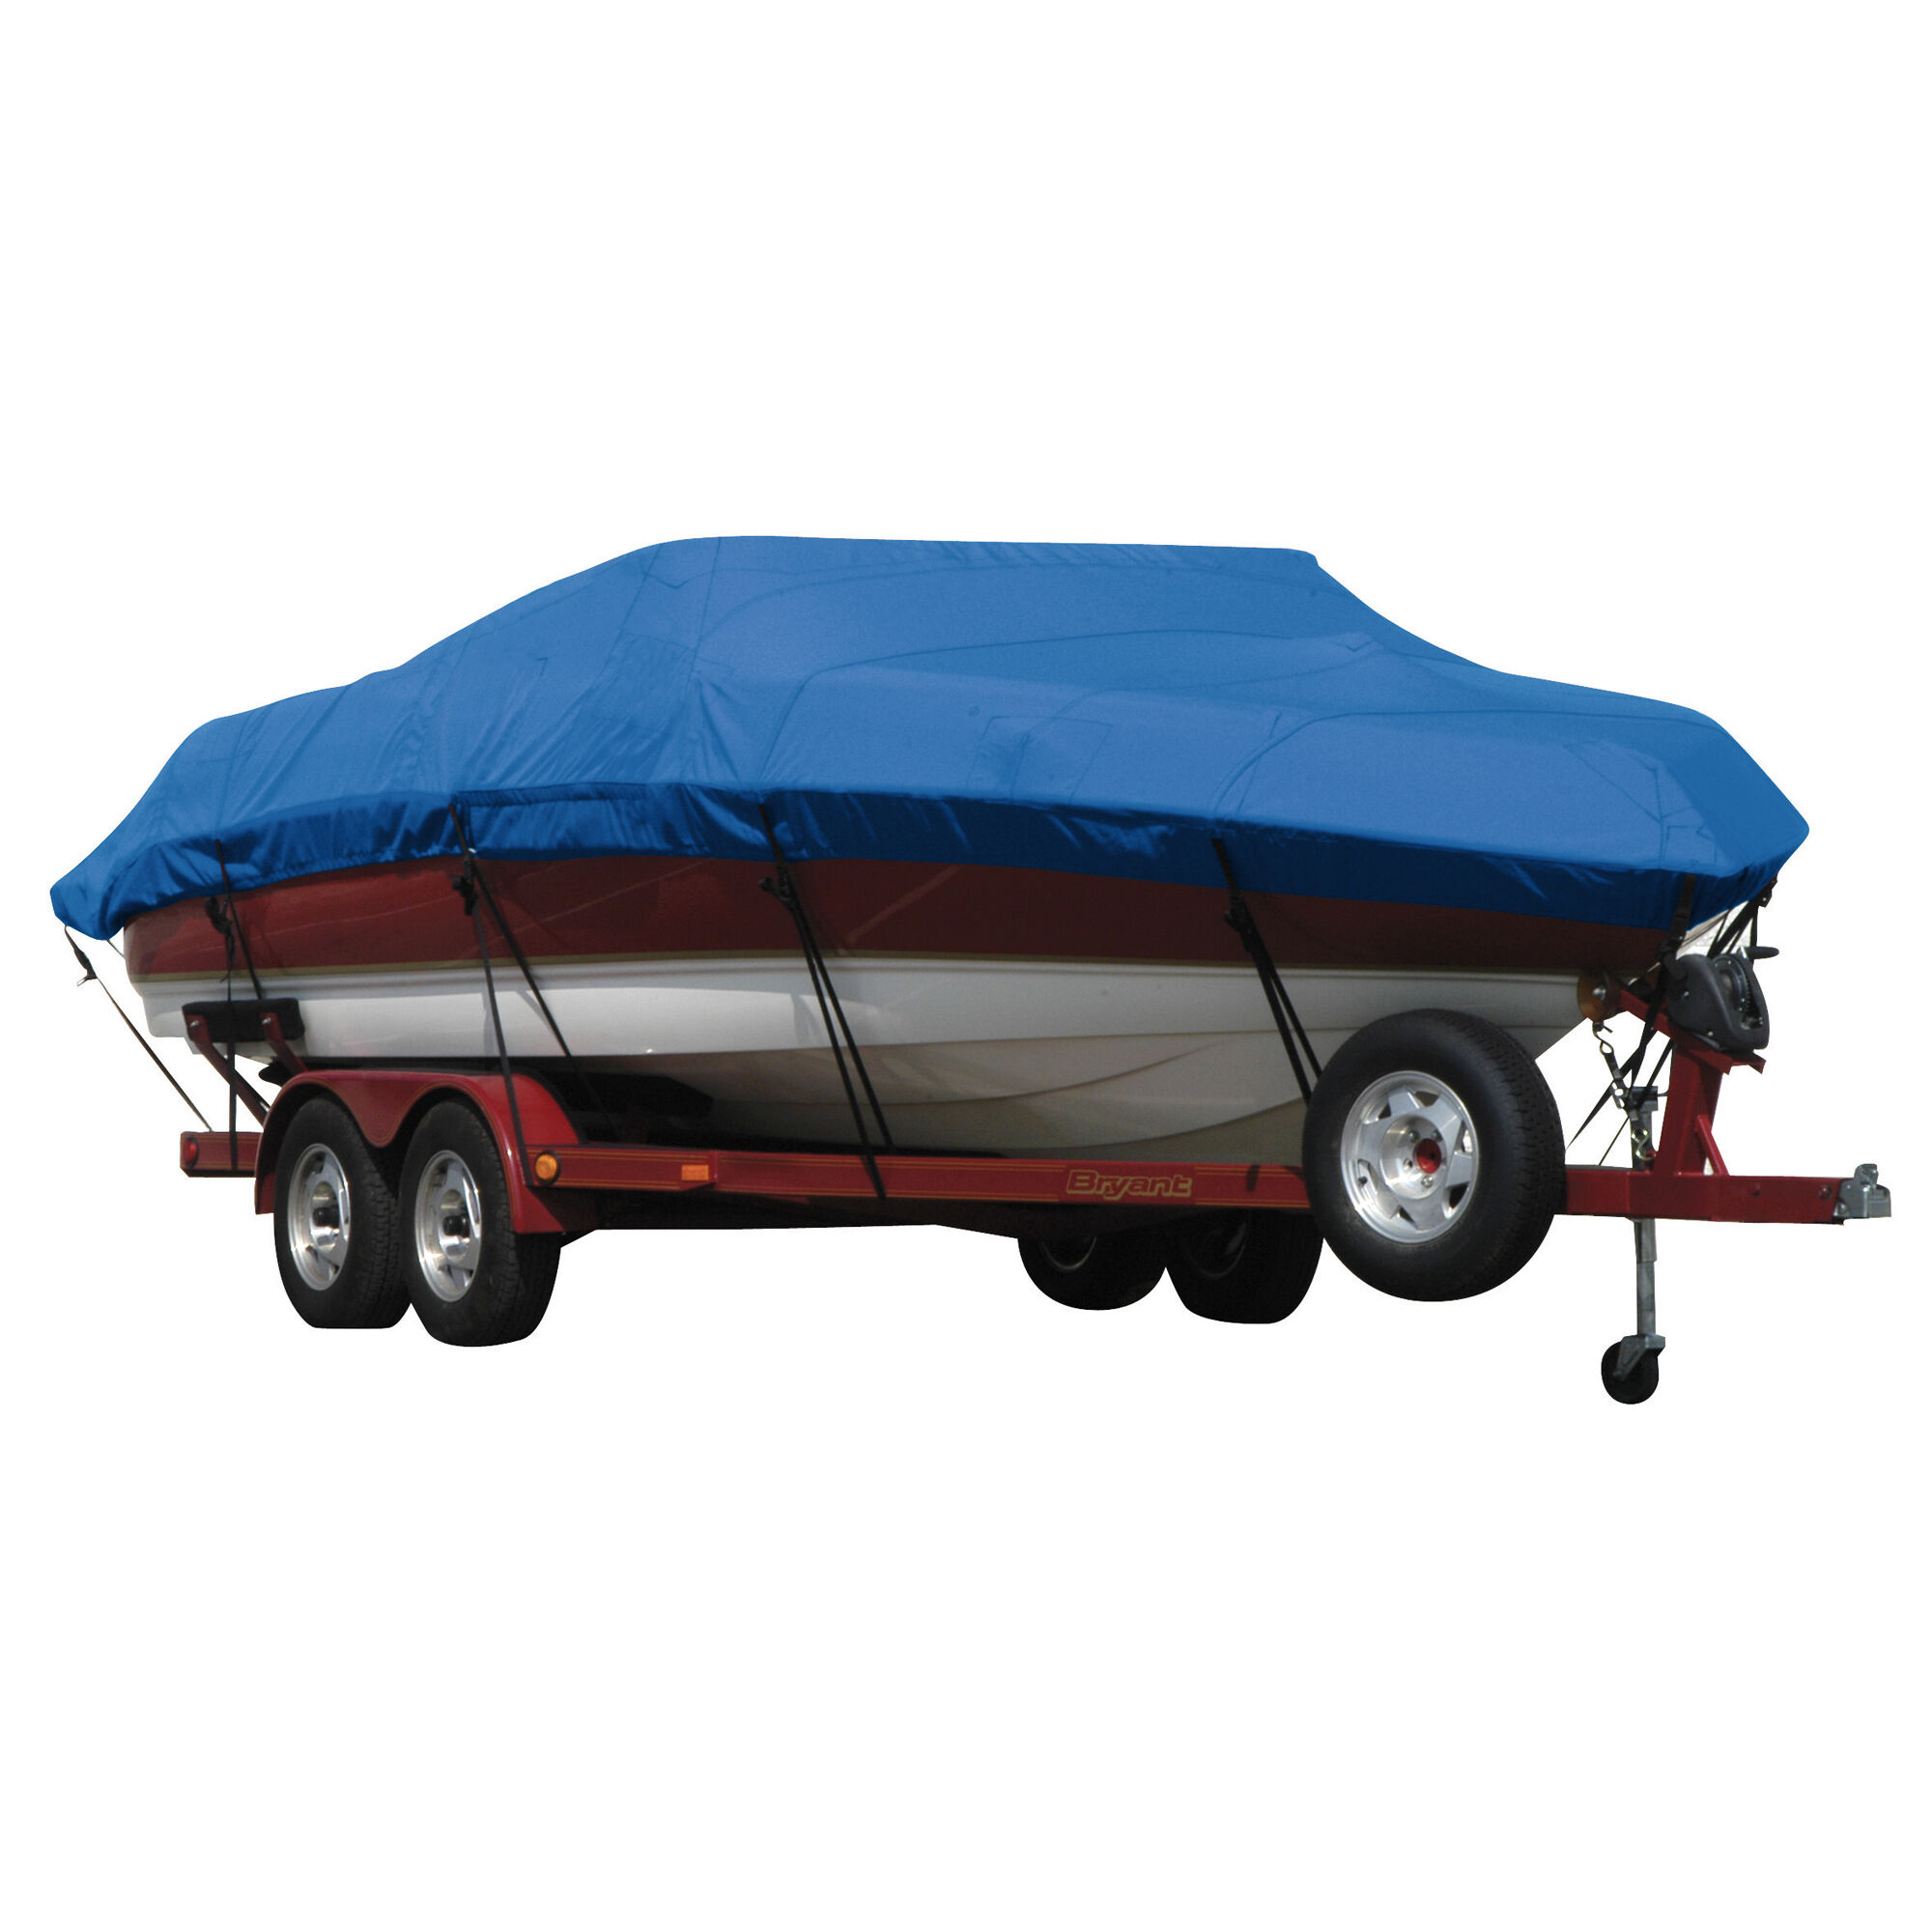 Covermate Exact Fit Sunbrella Boat Cover for Seaswirl Striper 2150 Striper 2150 Walkaround Hard Top O/B. Pacific Blue